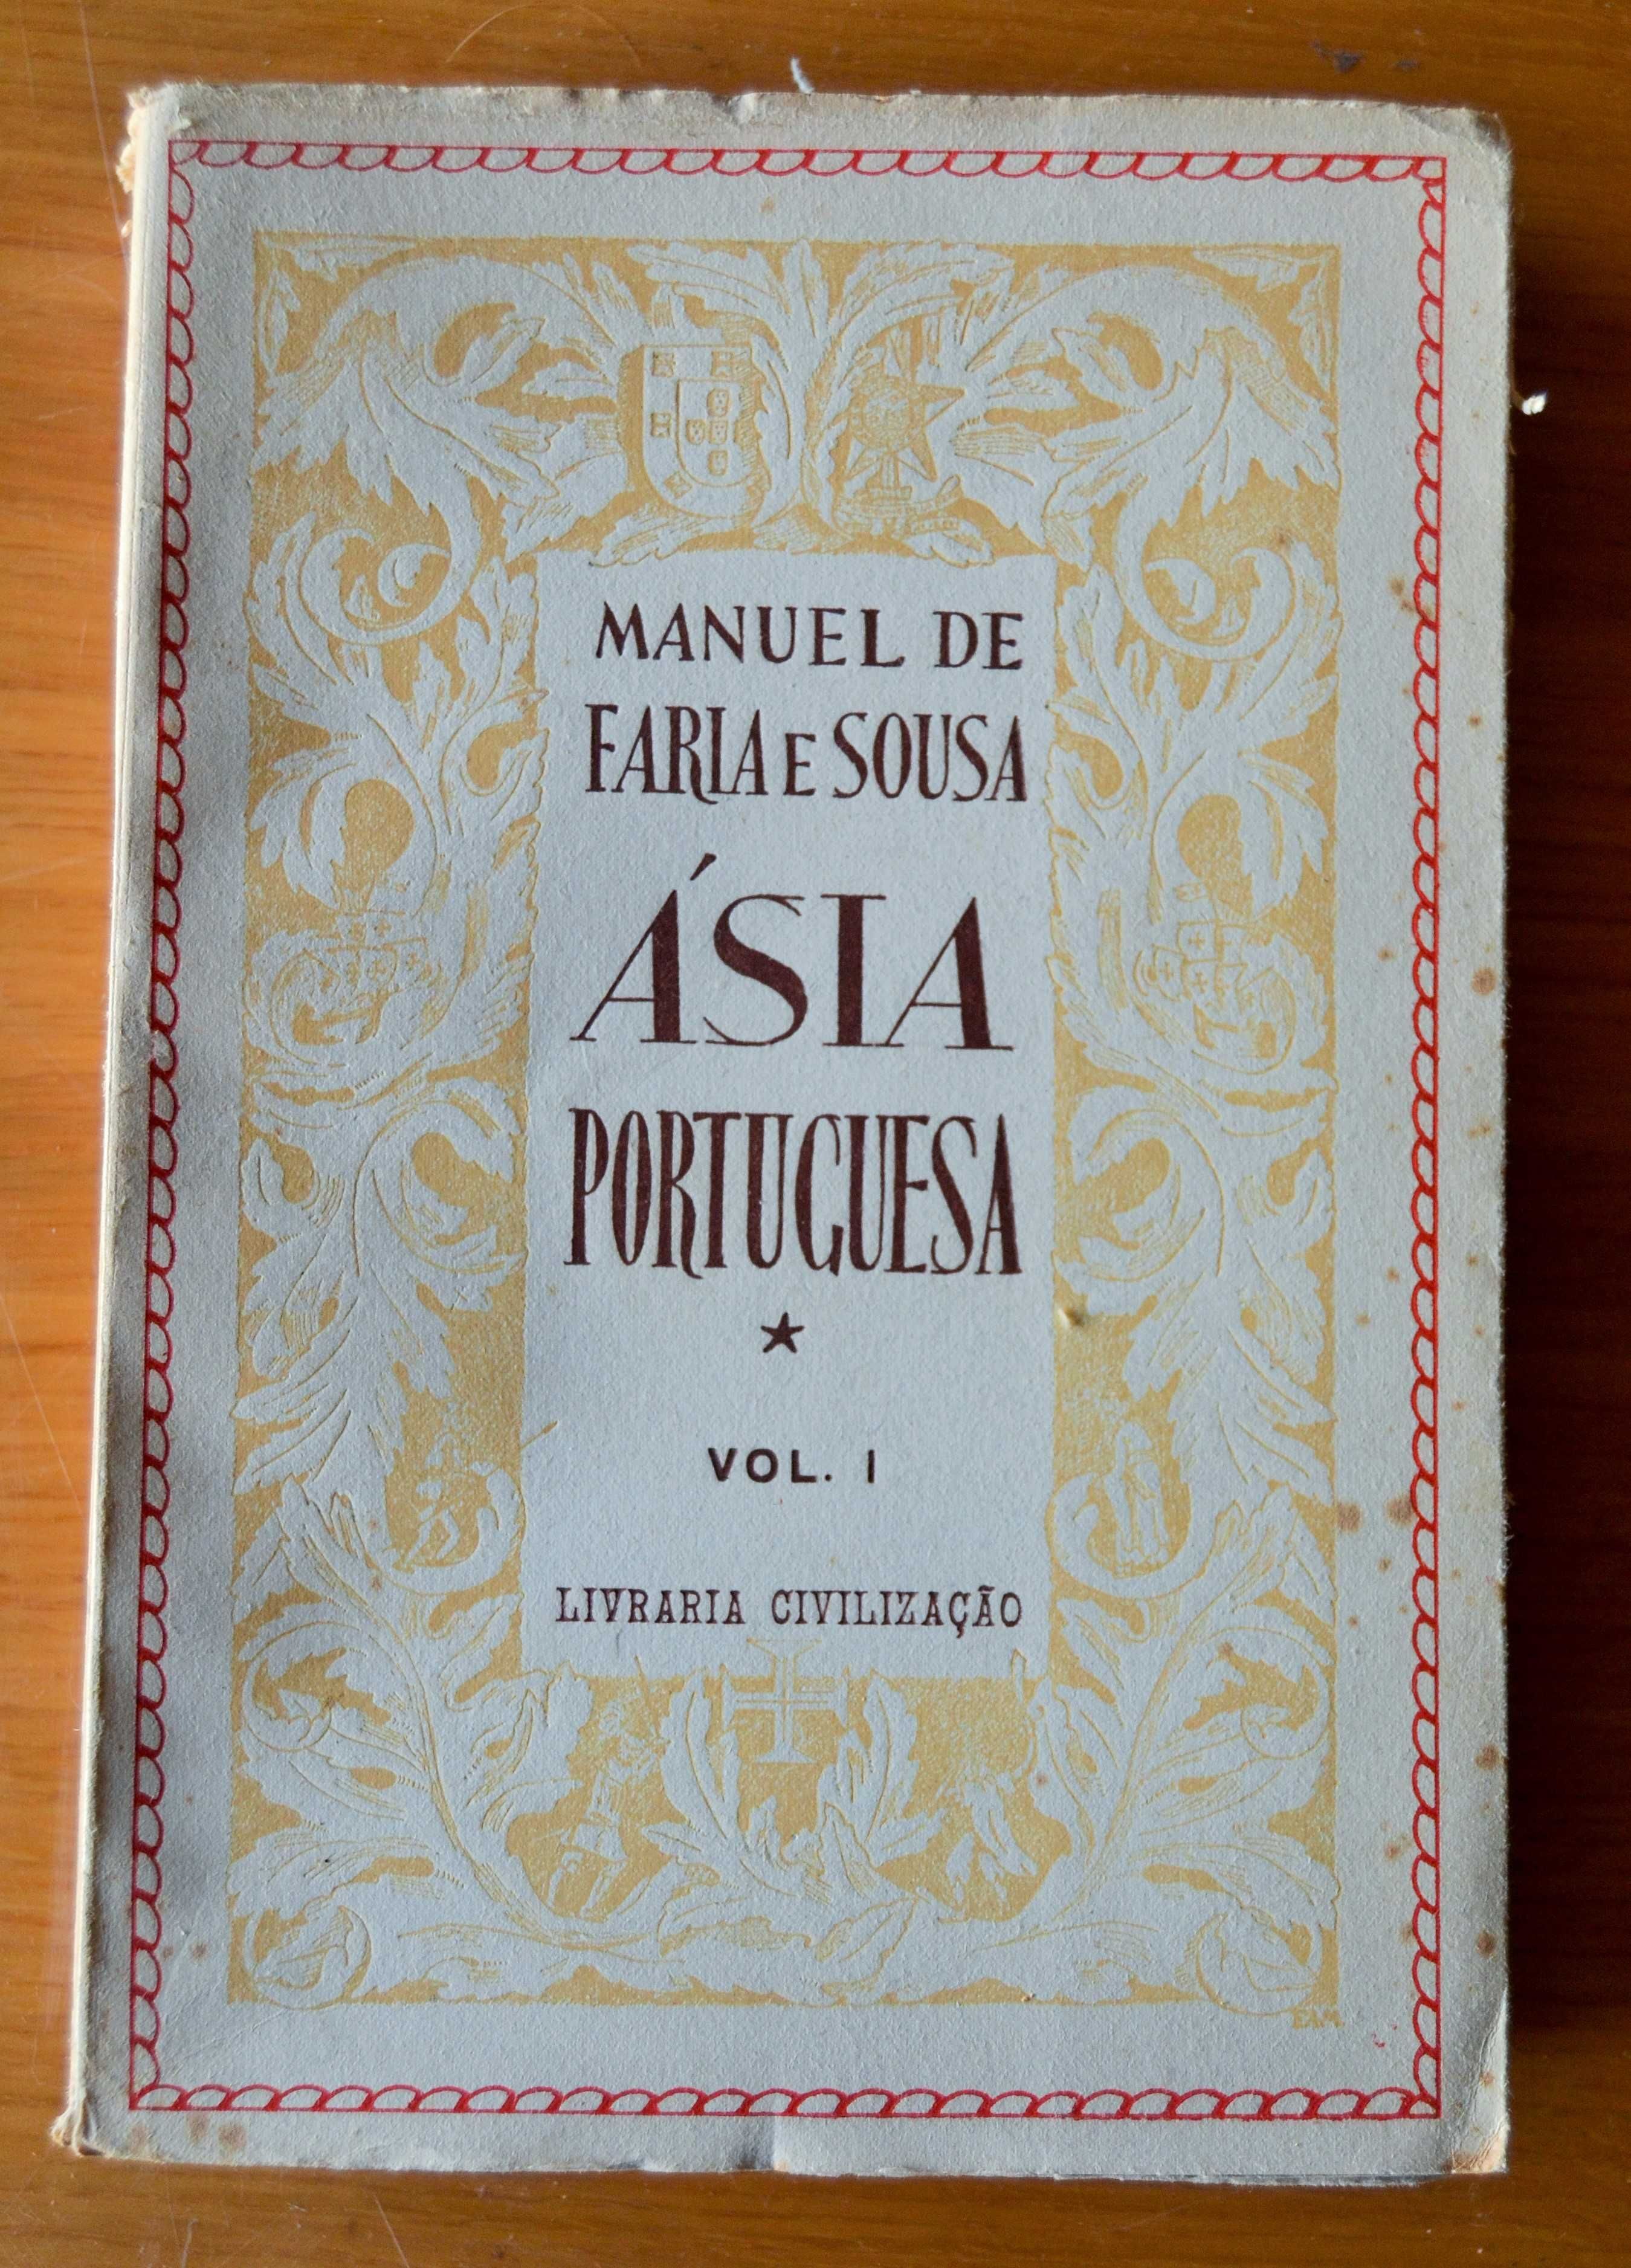 Ásia Portuguesa, Manuel Faria e Sousa 5 volumes, 1945